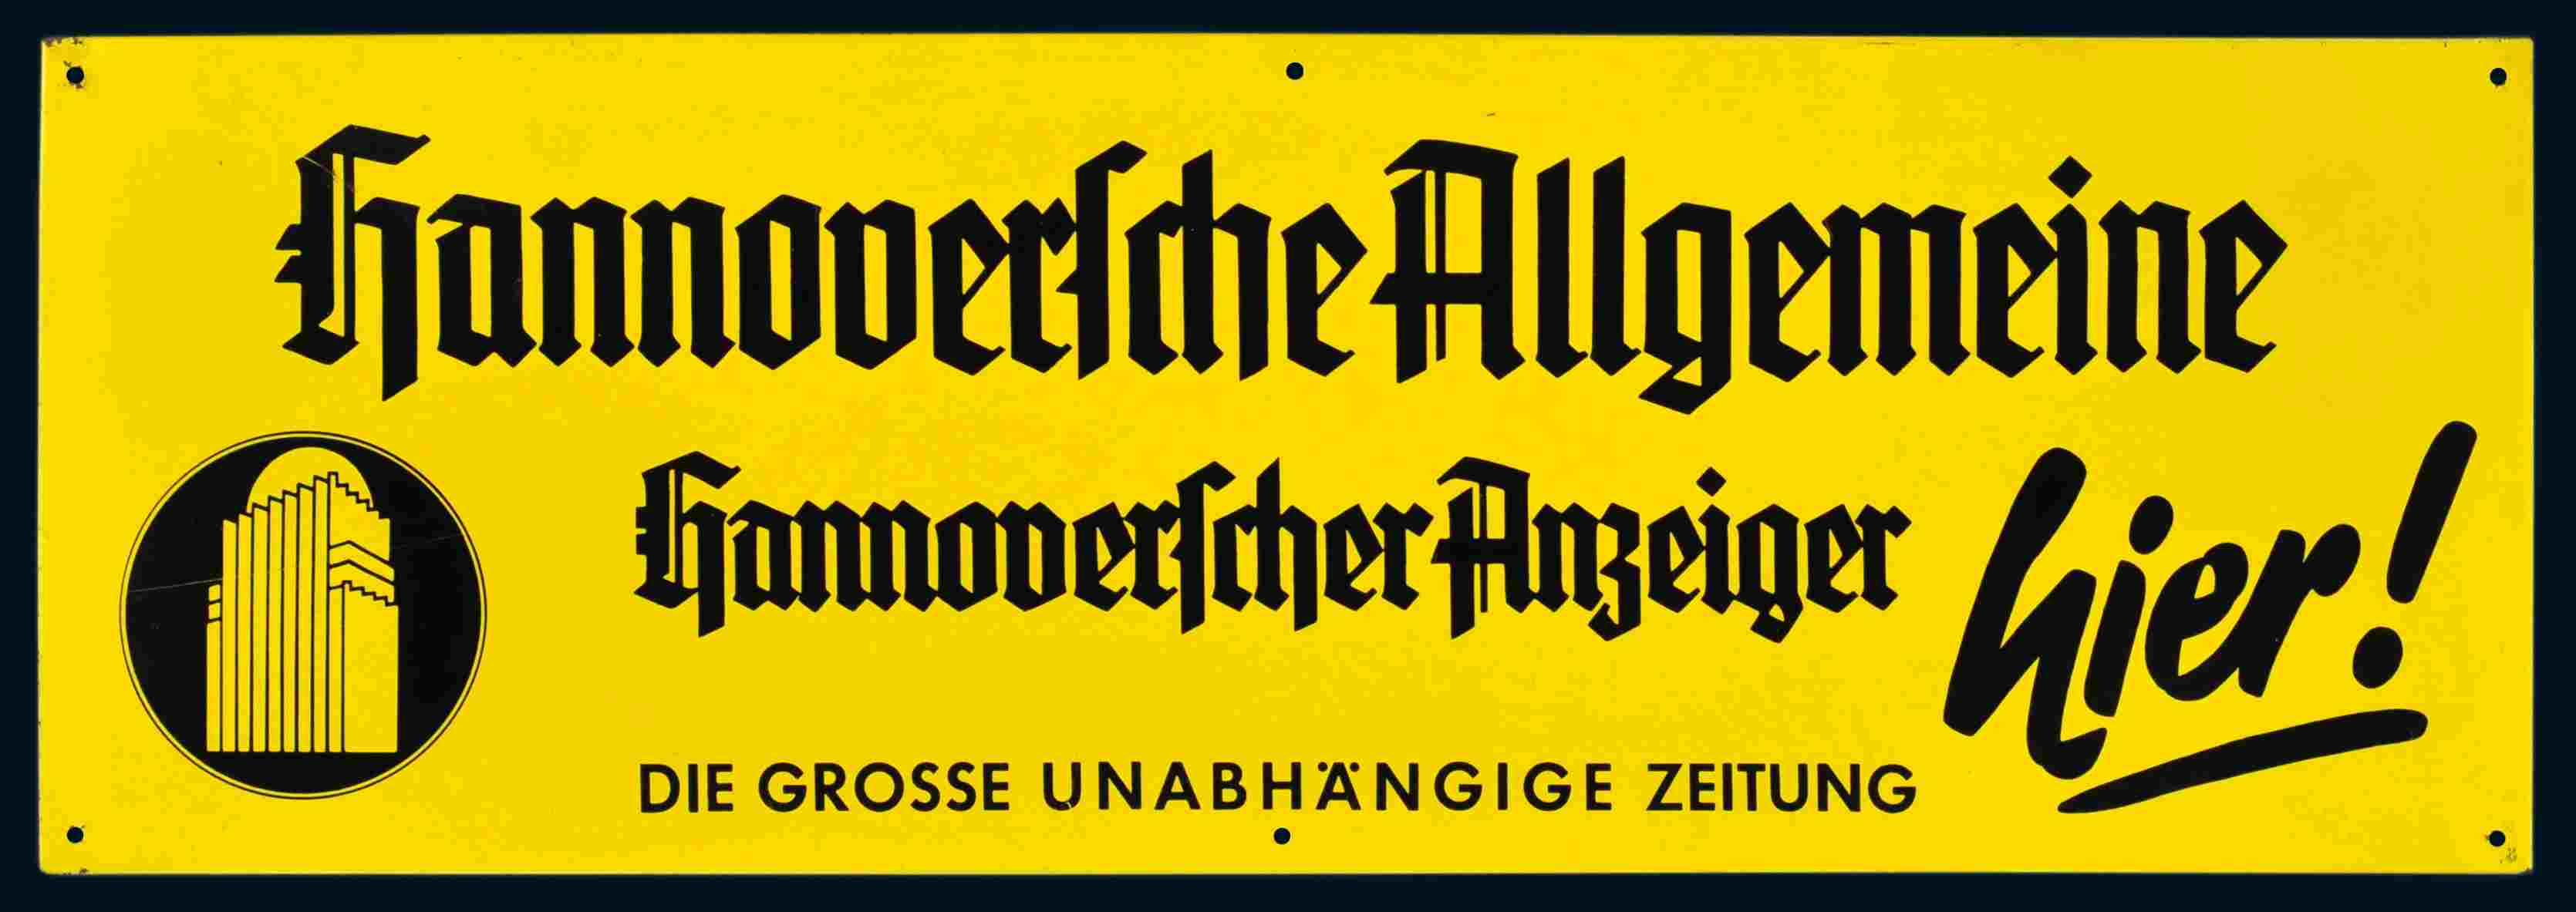 Hannoversche Allgemeine 